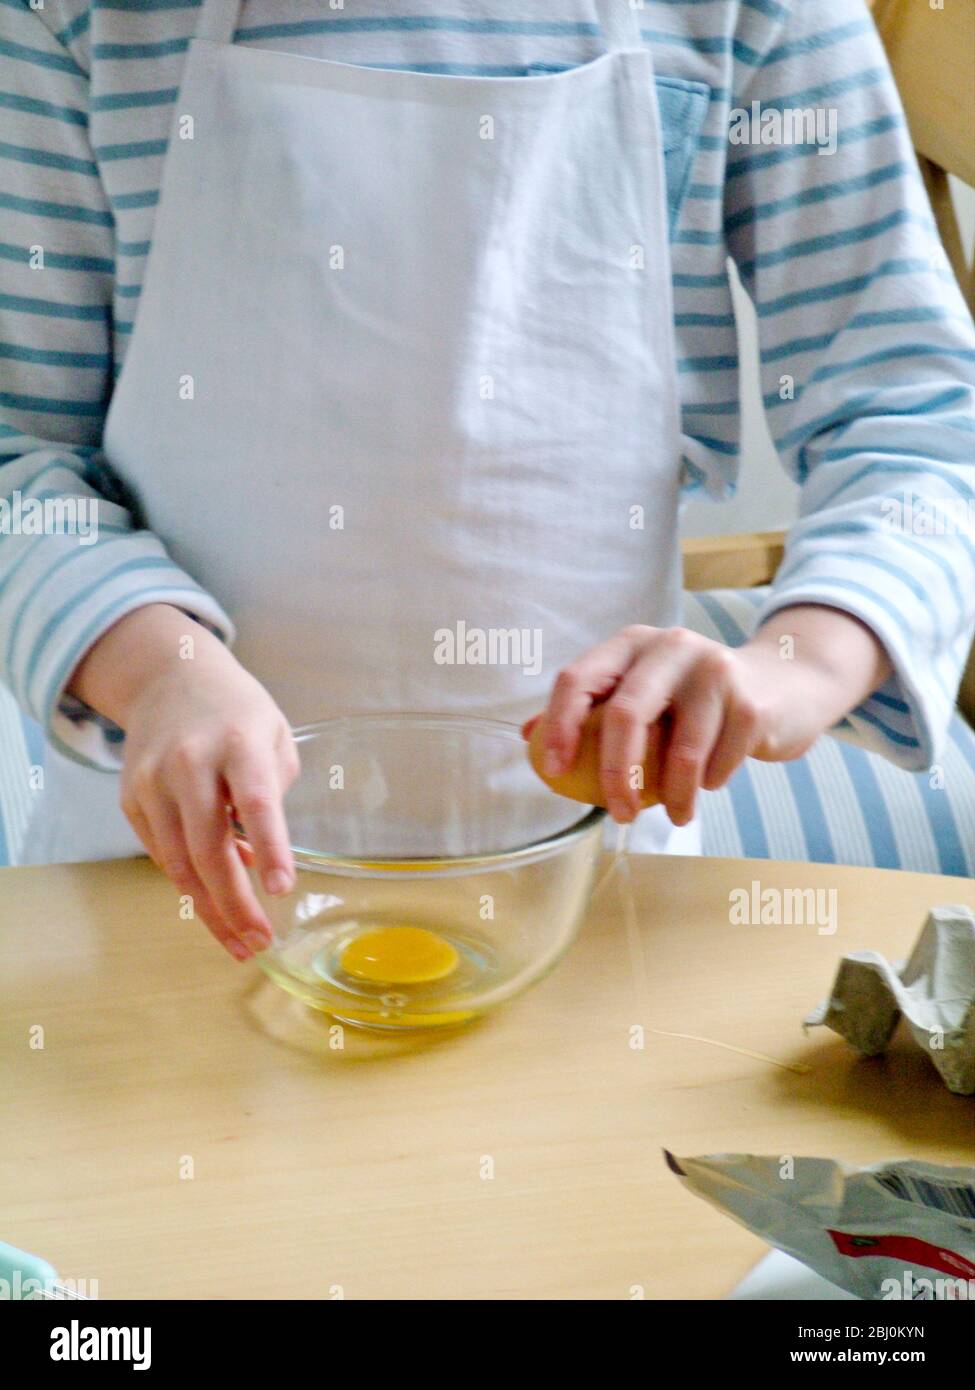 Niño rompiendo huevos en un tazón de vidrio, aprendiendo a hacer huevos revueltos. - Foto de stock